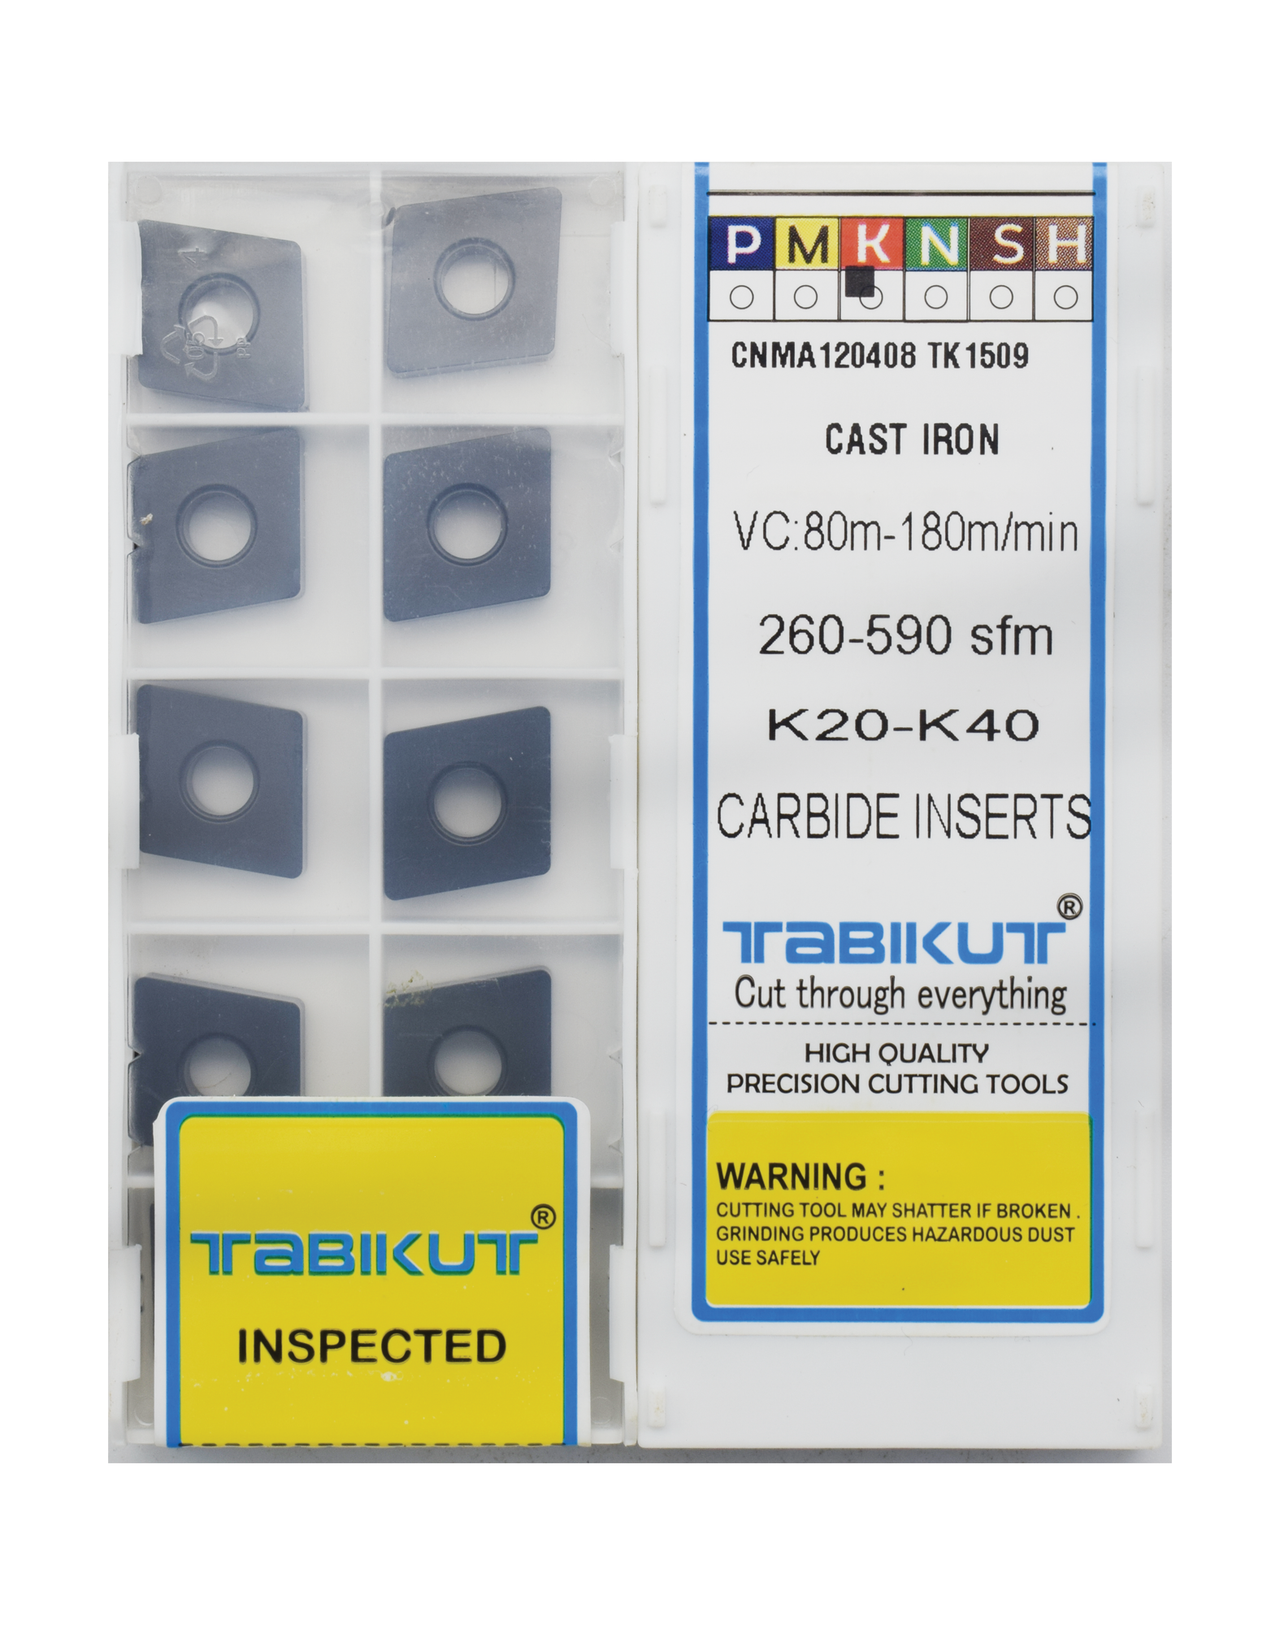 CNMA120408/12 TK1509 CAST IRON INSERT TABIKUT Pack Of 10